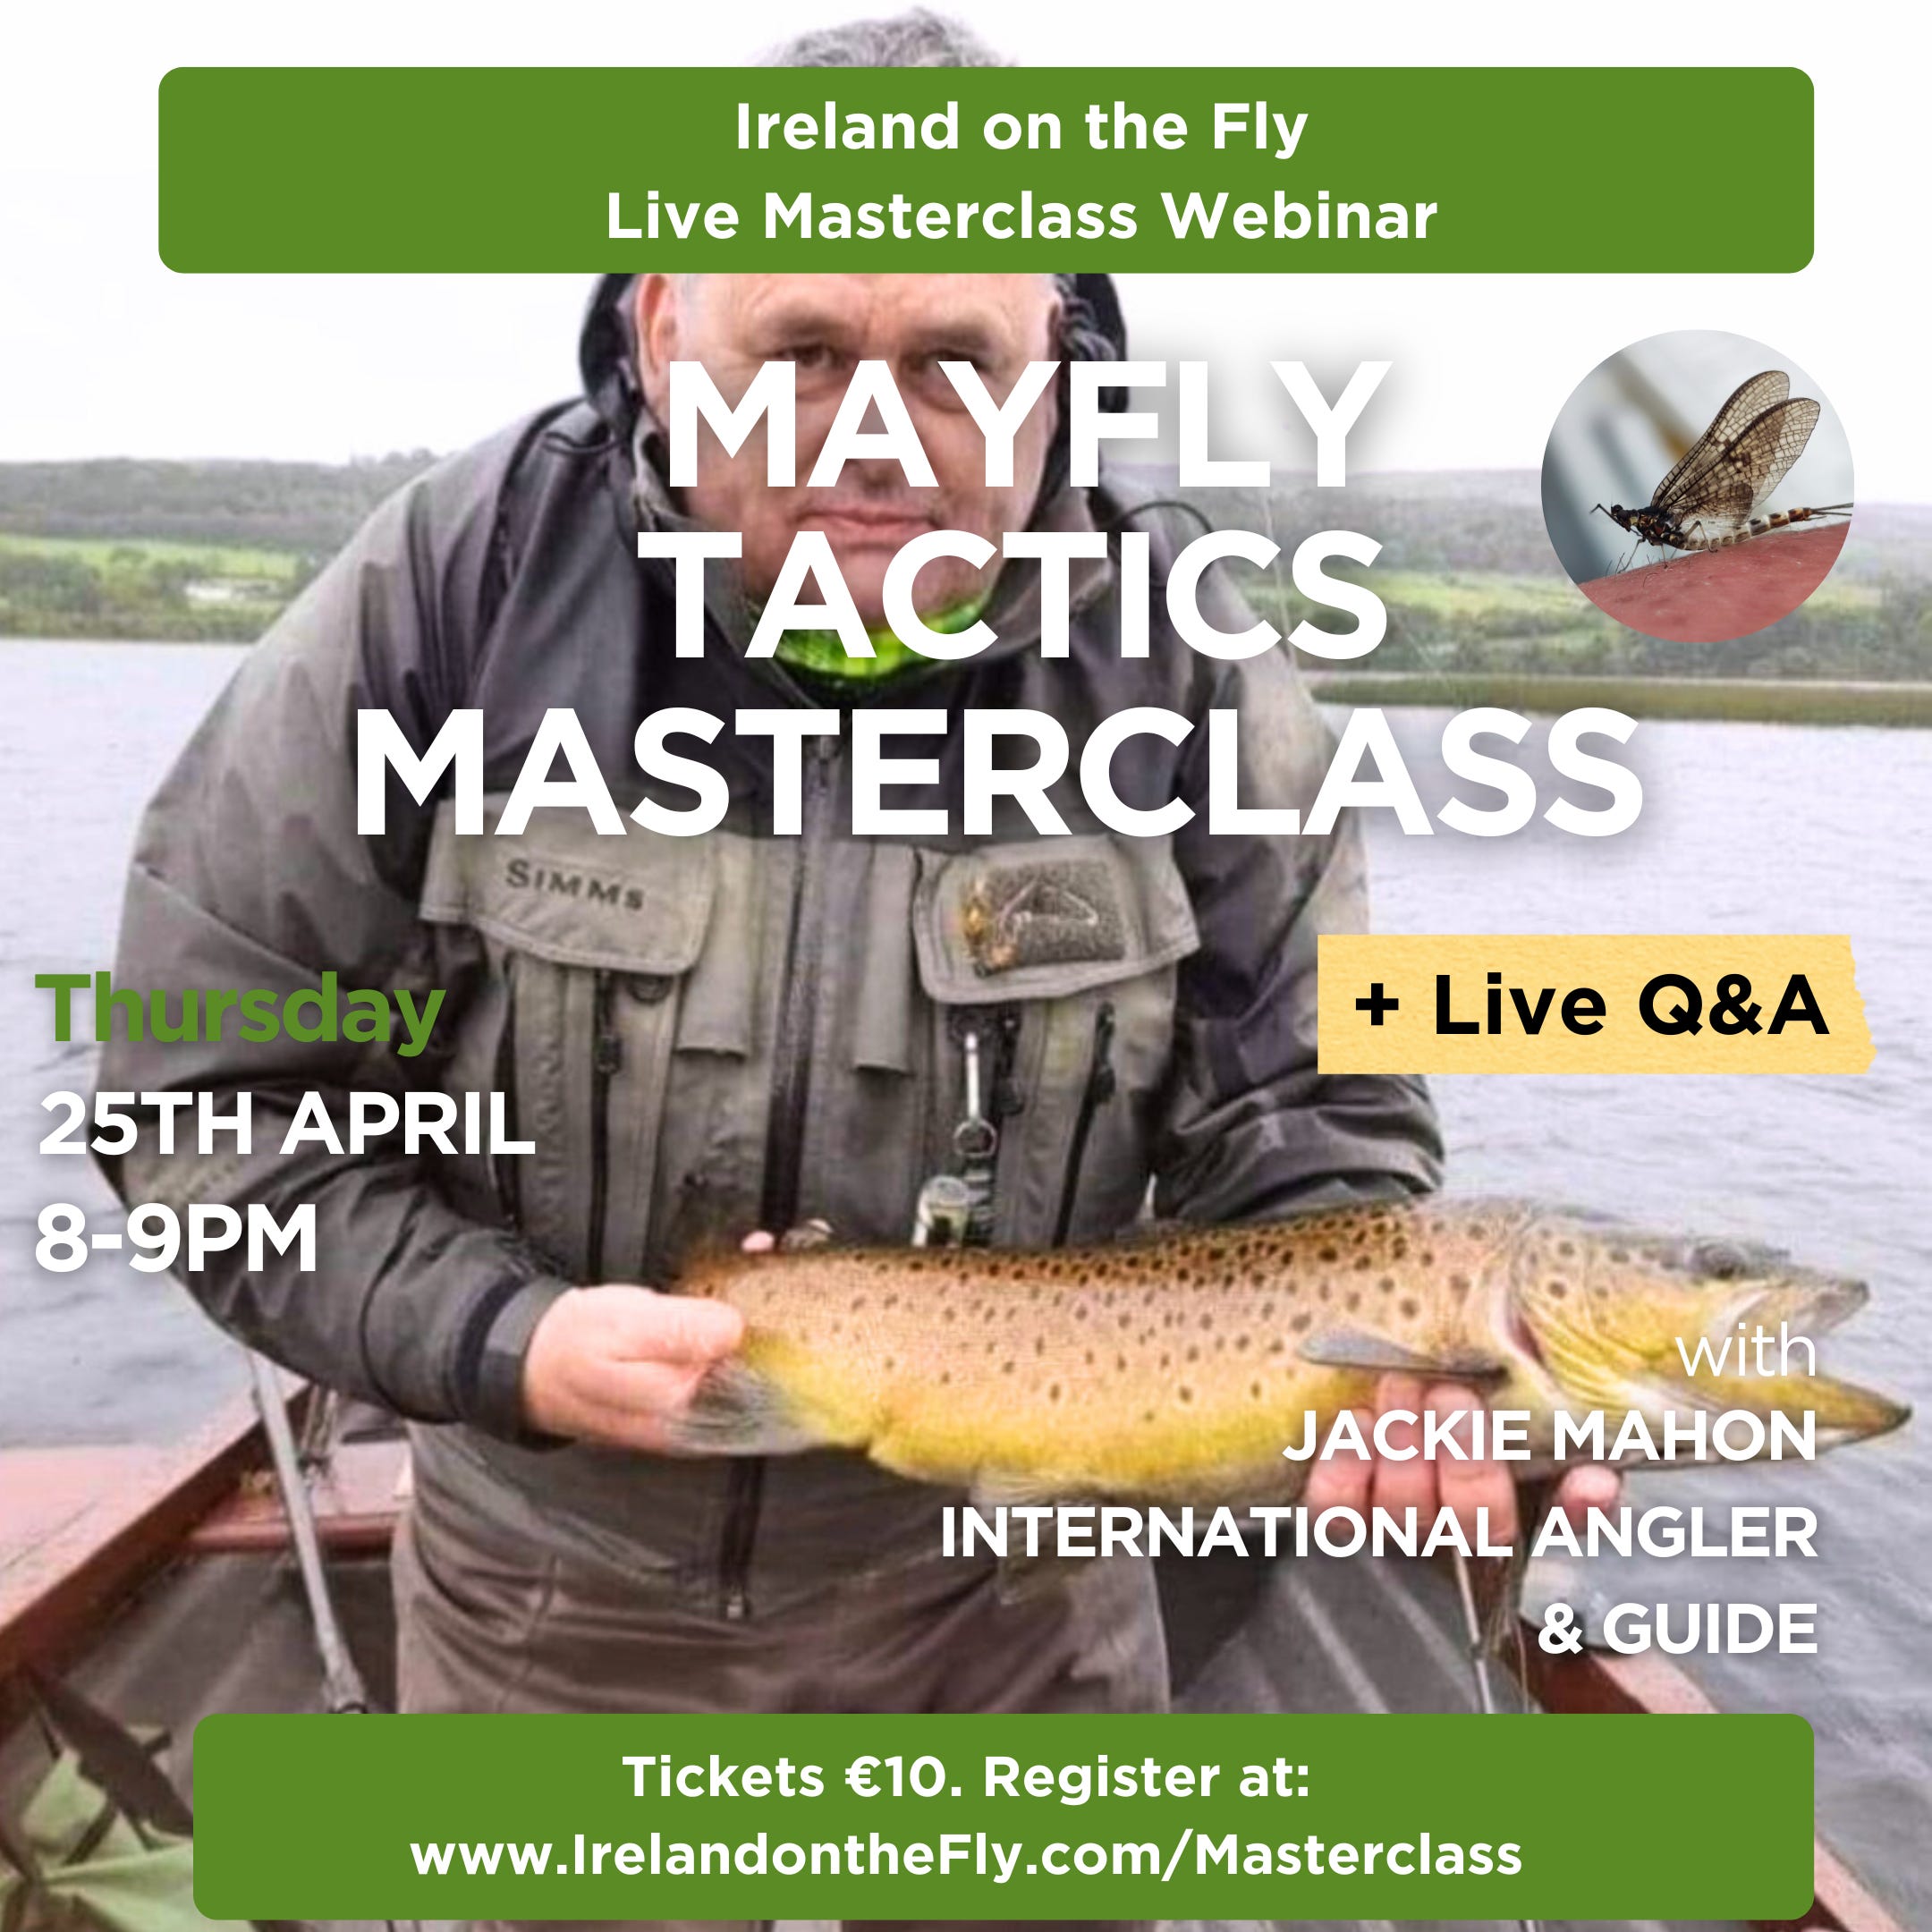 Mayfly Tactics Masterclass - Ireland on the Fly